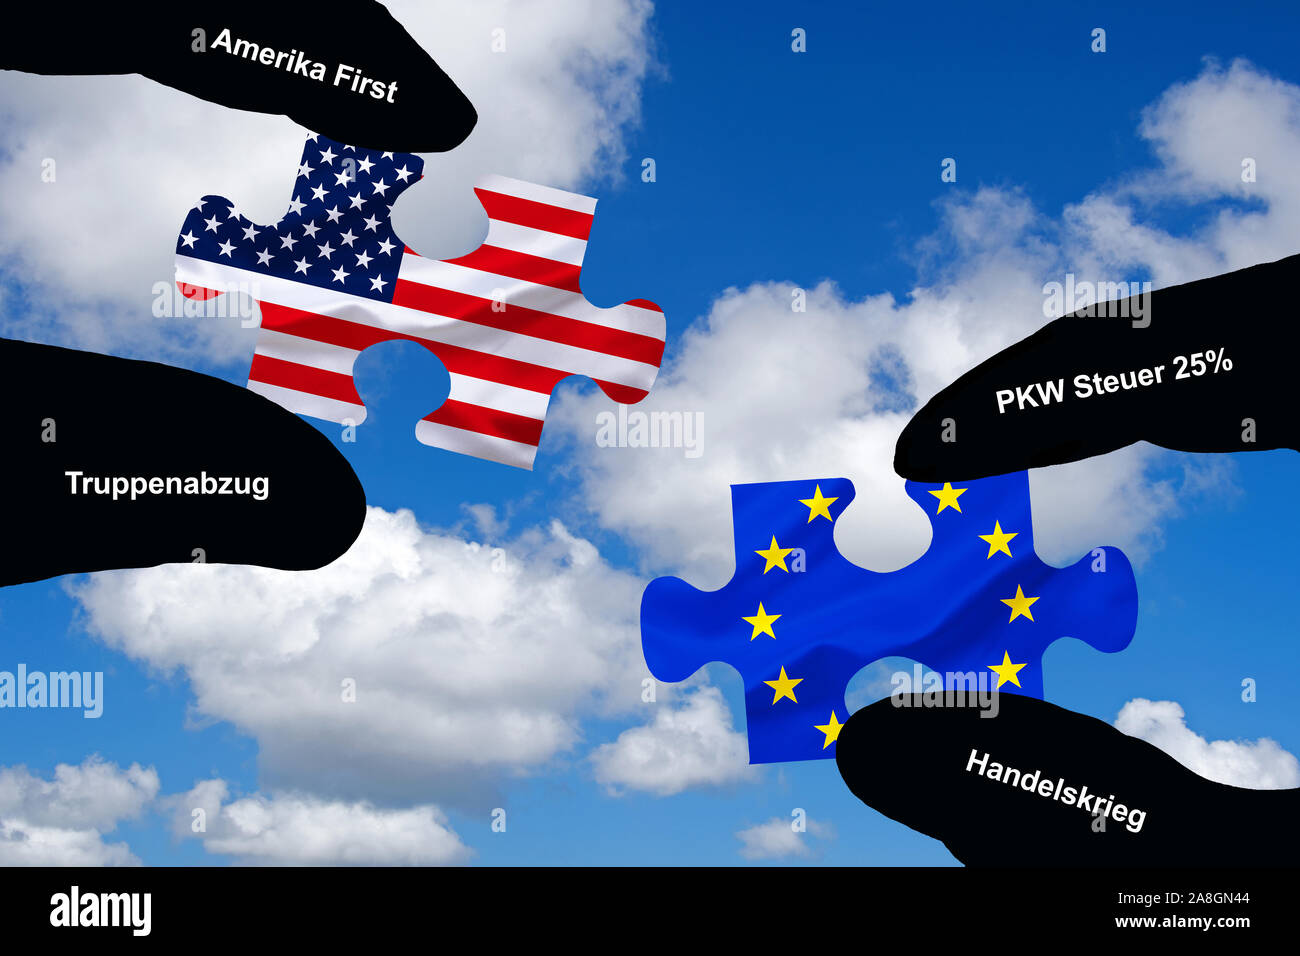 Zwei Hände halten jeweils ein Puzzle Teil, USA, Europa, Silhouette, Konfrontation, Annäherung, Krieg, Handelskrieg, Brexit, Truppenabzug, 25 % PKW-Ste Stock Photo